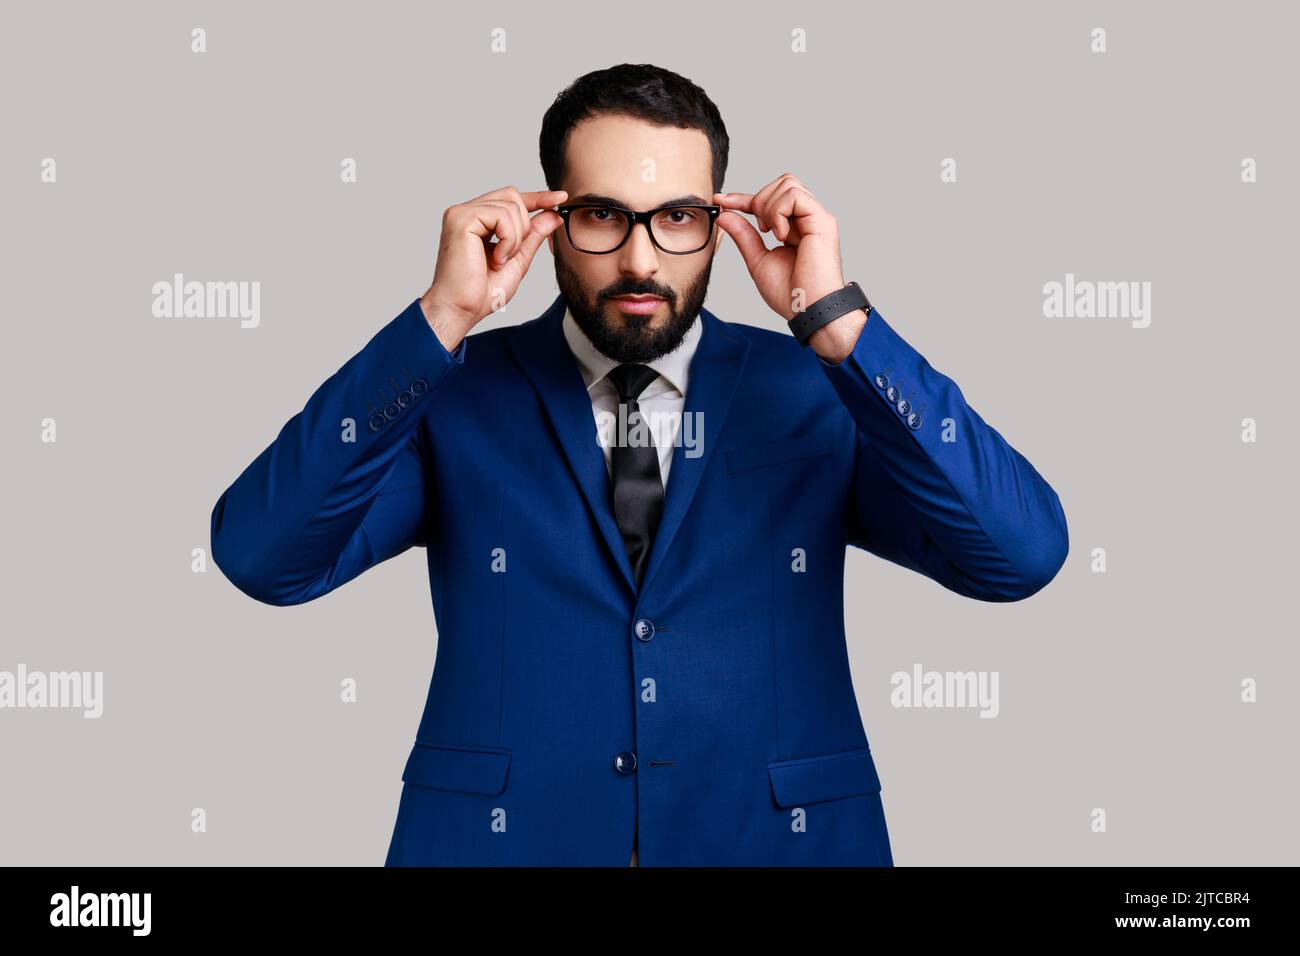 Porträt eines ernsthaften bärtigen Geschäftsmannes, der die Brille ablegt und die Kamera mit herrischem Ausdruck anschaut und einen Anzug im offiziellen Stil trägt. Innenaufnahme des Studios isoliert auf grauem Hintergrund. Stockfoto